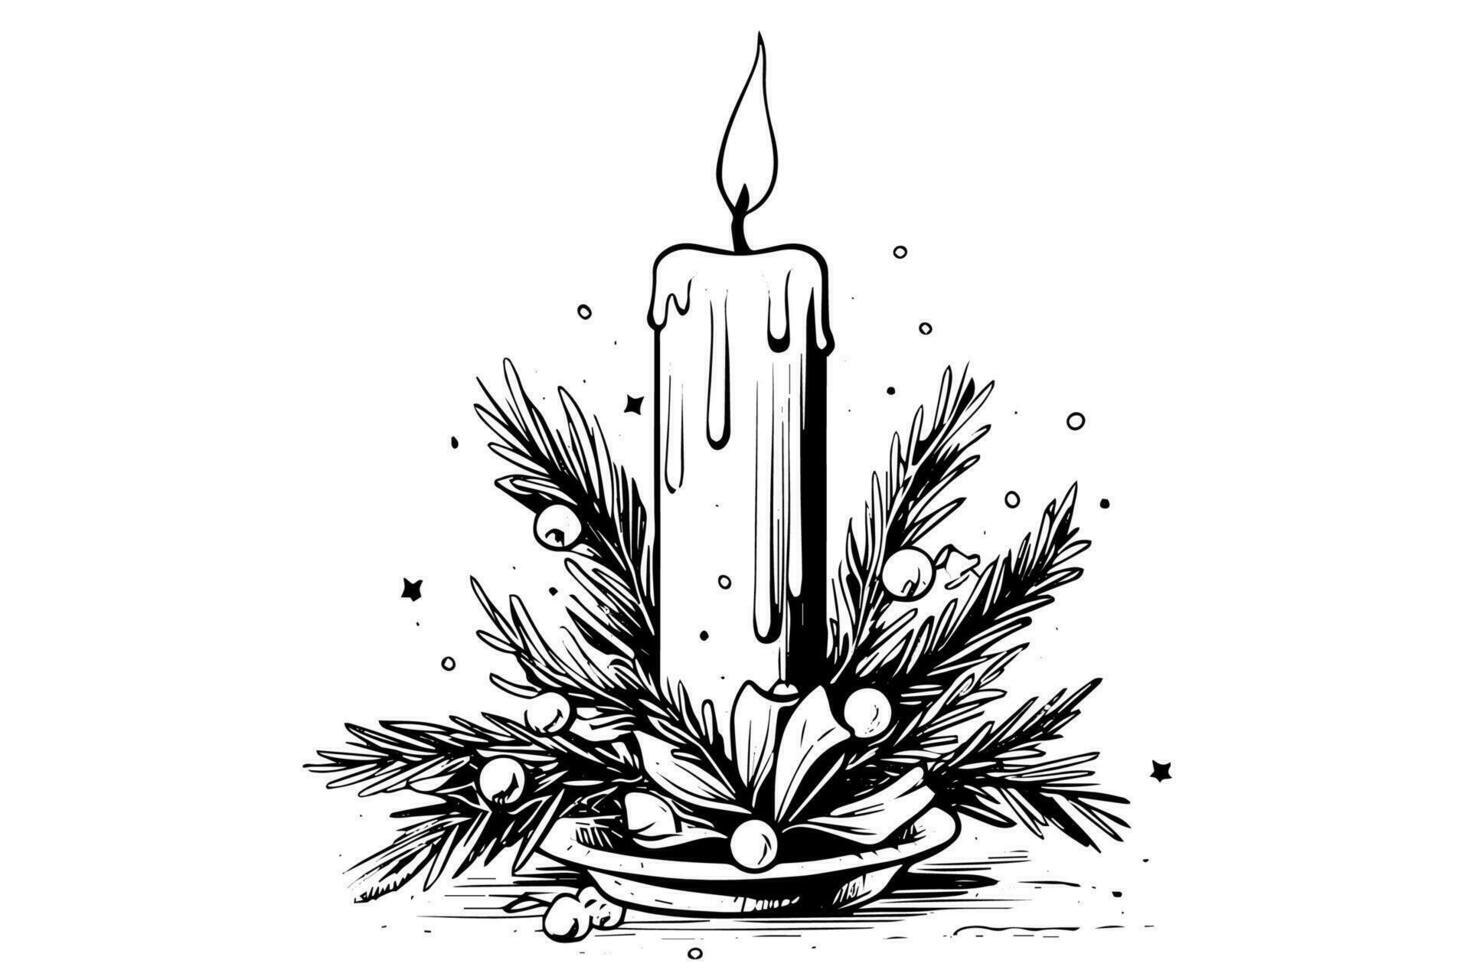 grueso Navidad velas incendio. mano dibujado bosquejo grabado estilo vector ilustración.